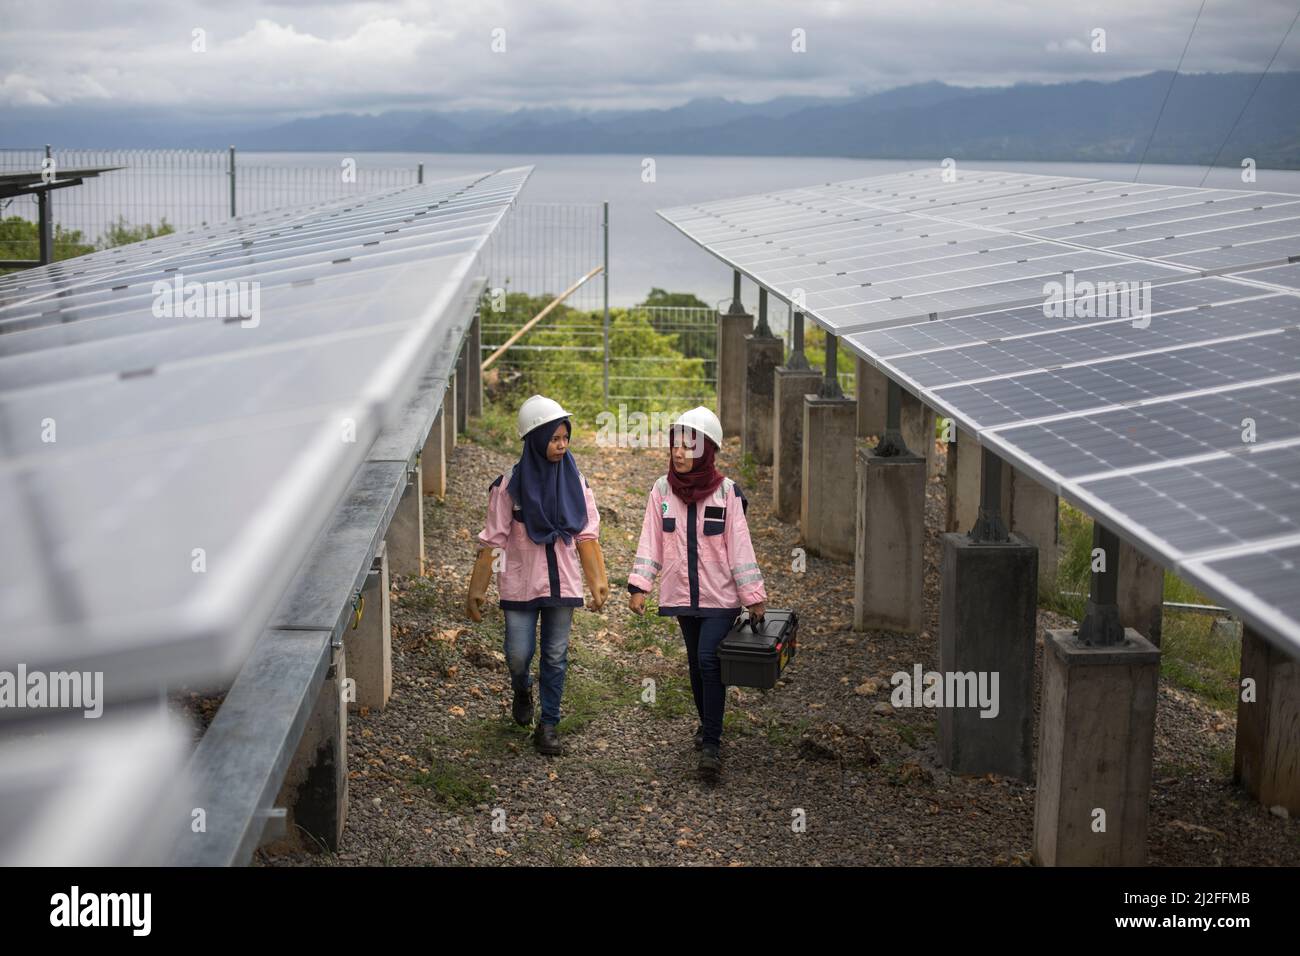 Los técnicos eléctricos subalternos de Karmila (23, l) y Verawati (25, r) inspeccionan y mantienen paneles solares en la isla de Karampuang, Indonesia, que estaban inst Foto de stock